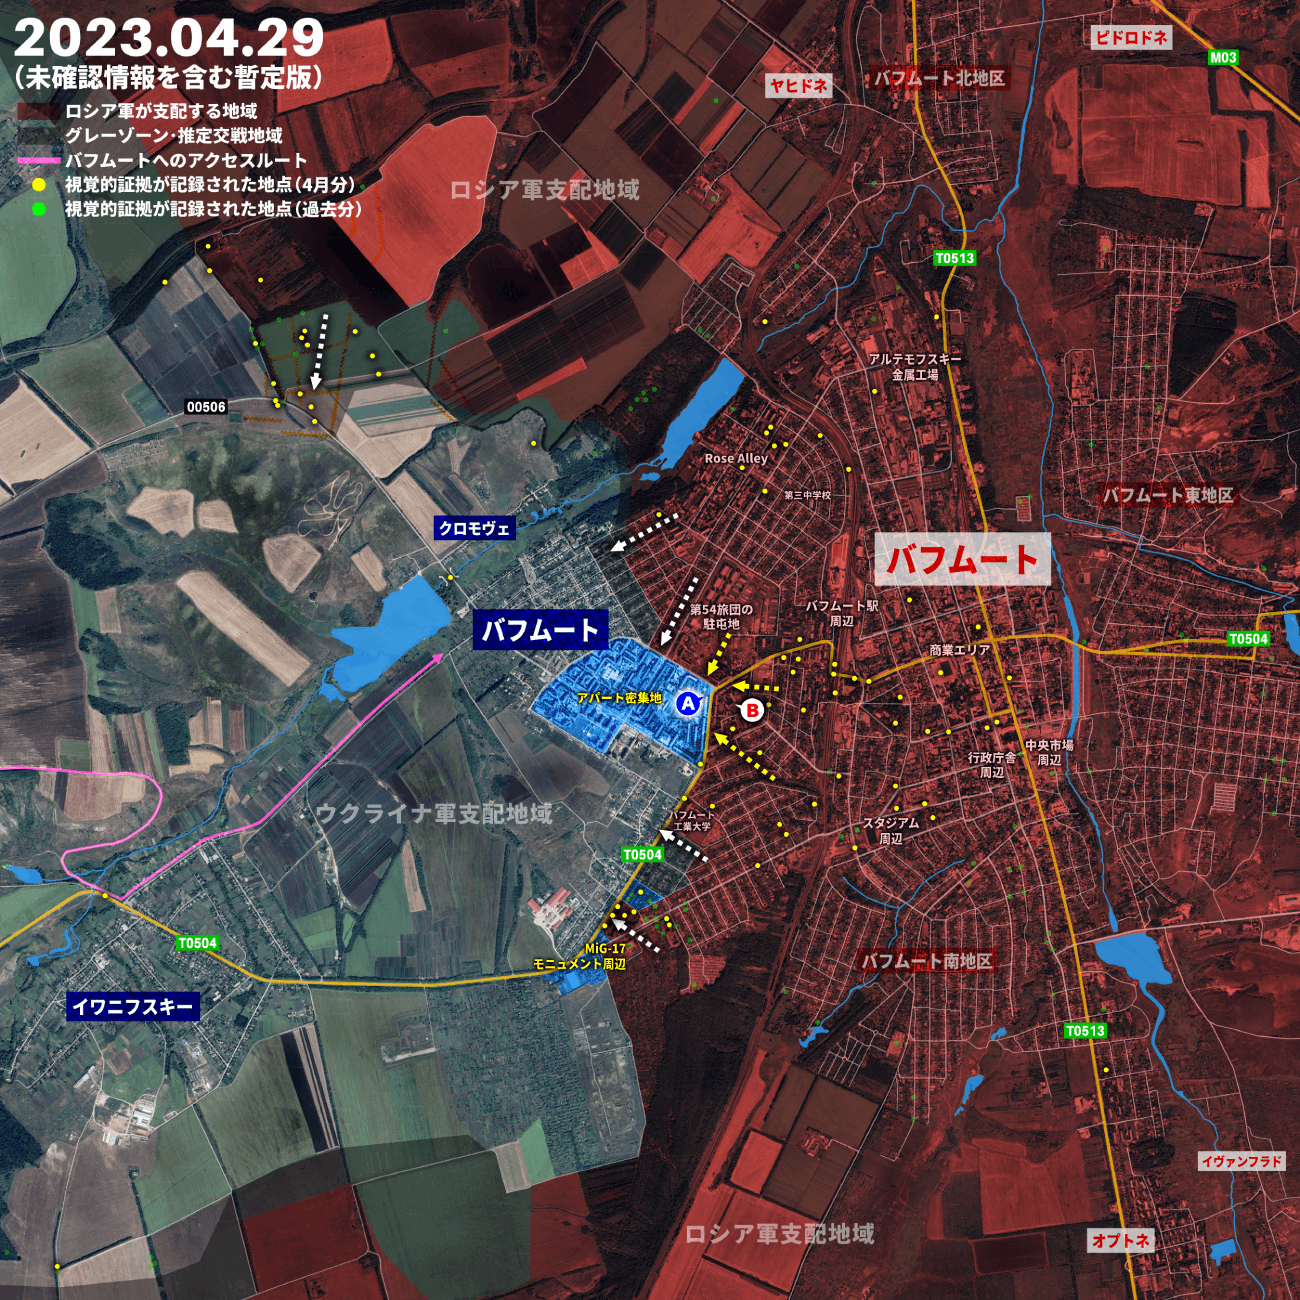 ウクライナ軍がセヴァストポリを攻撃か、ロシア軍はバフムート市内で前進